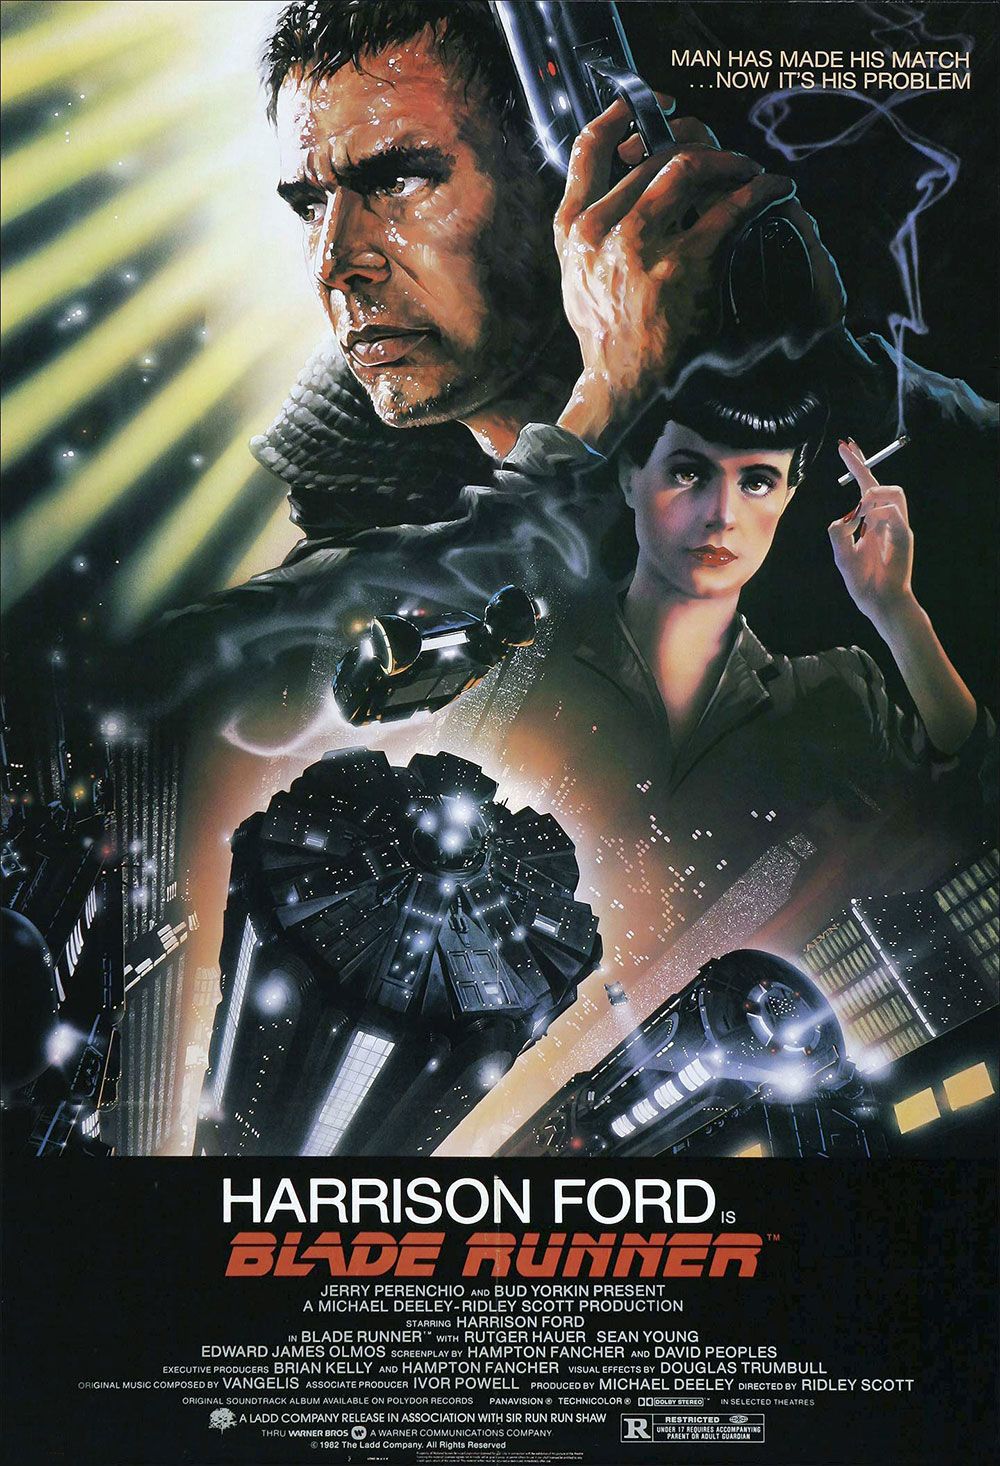 The original 1980s poster for Blade Runner